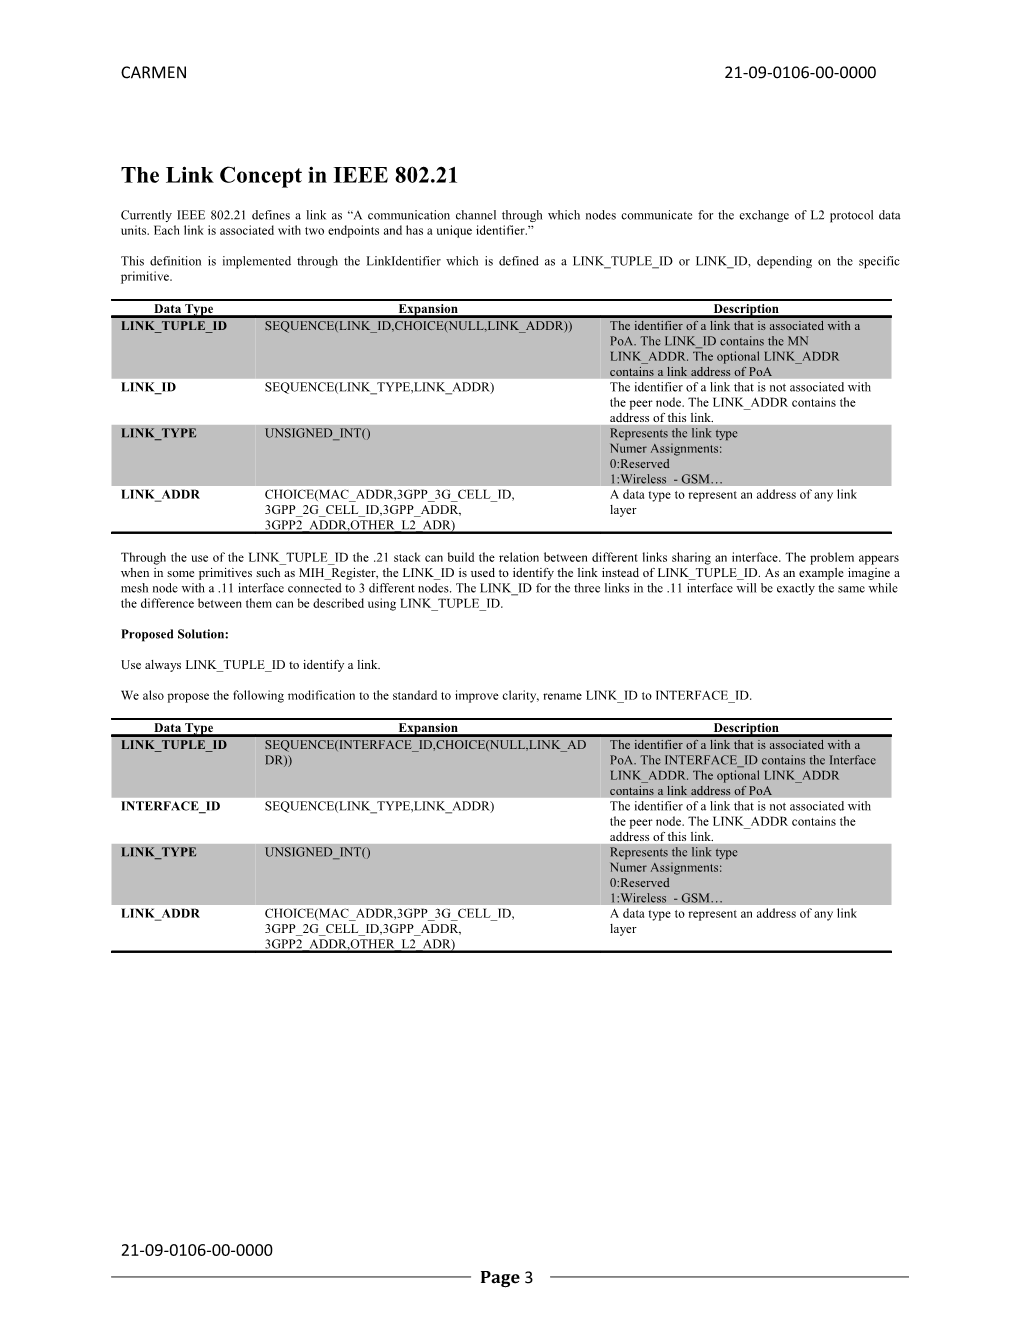 IEEE 802.21 Mesh Ad-Hoc Discussion Document